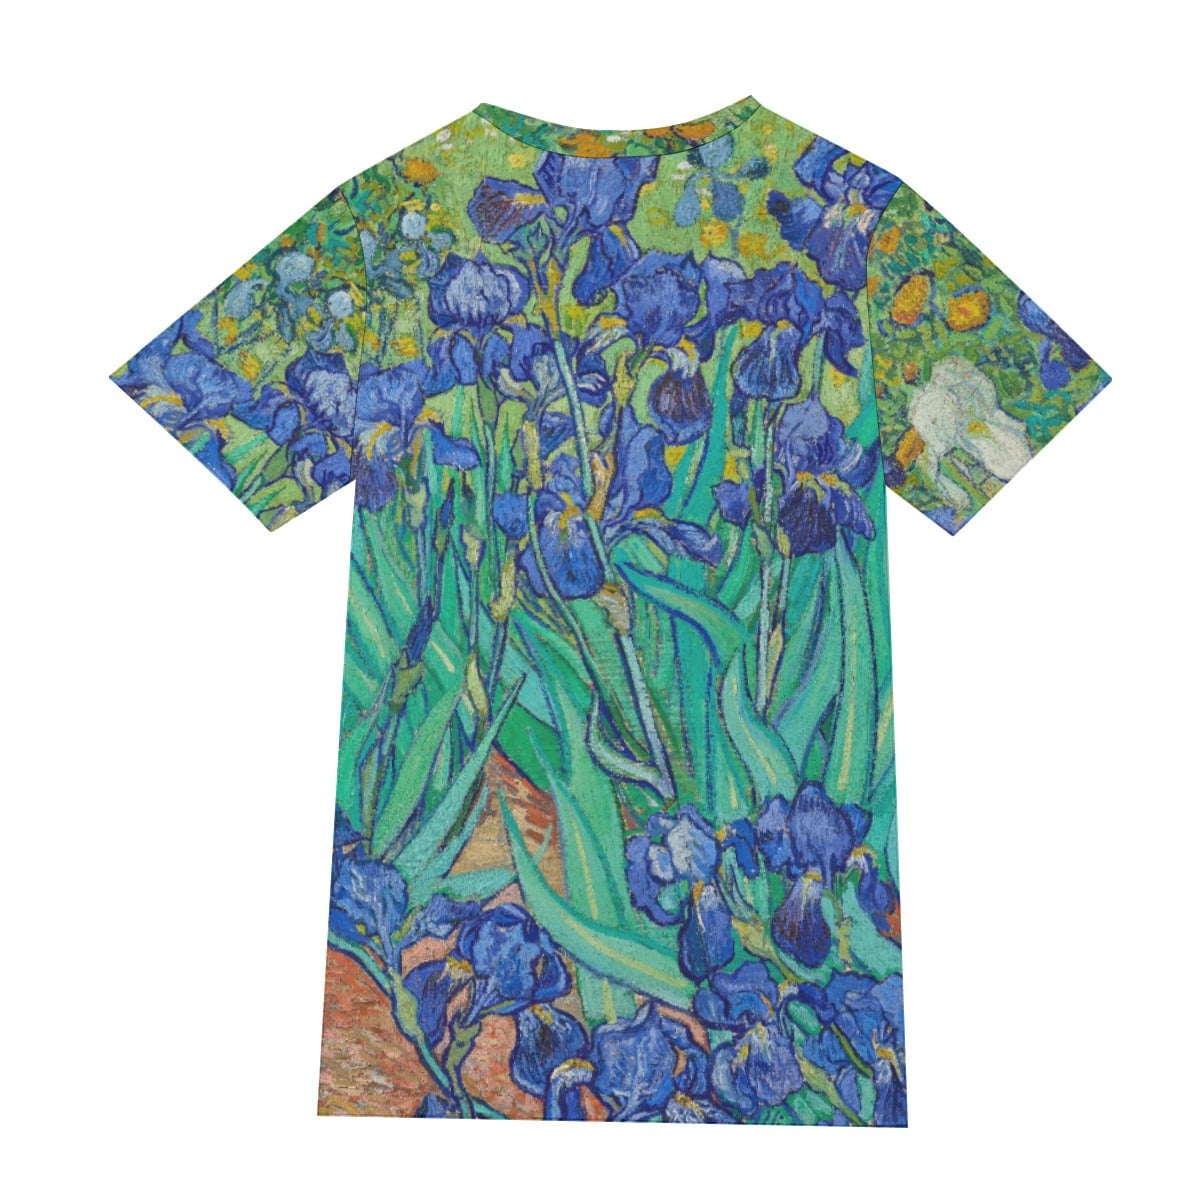 Vincent van Gogh’s Irises T-Shirt